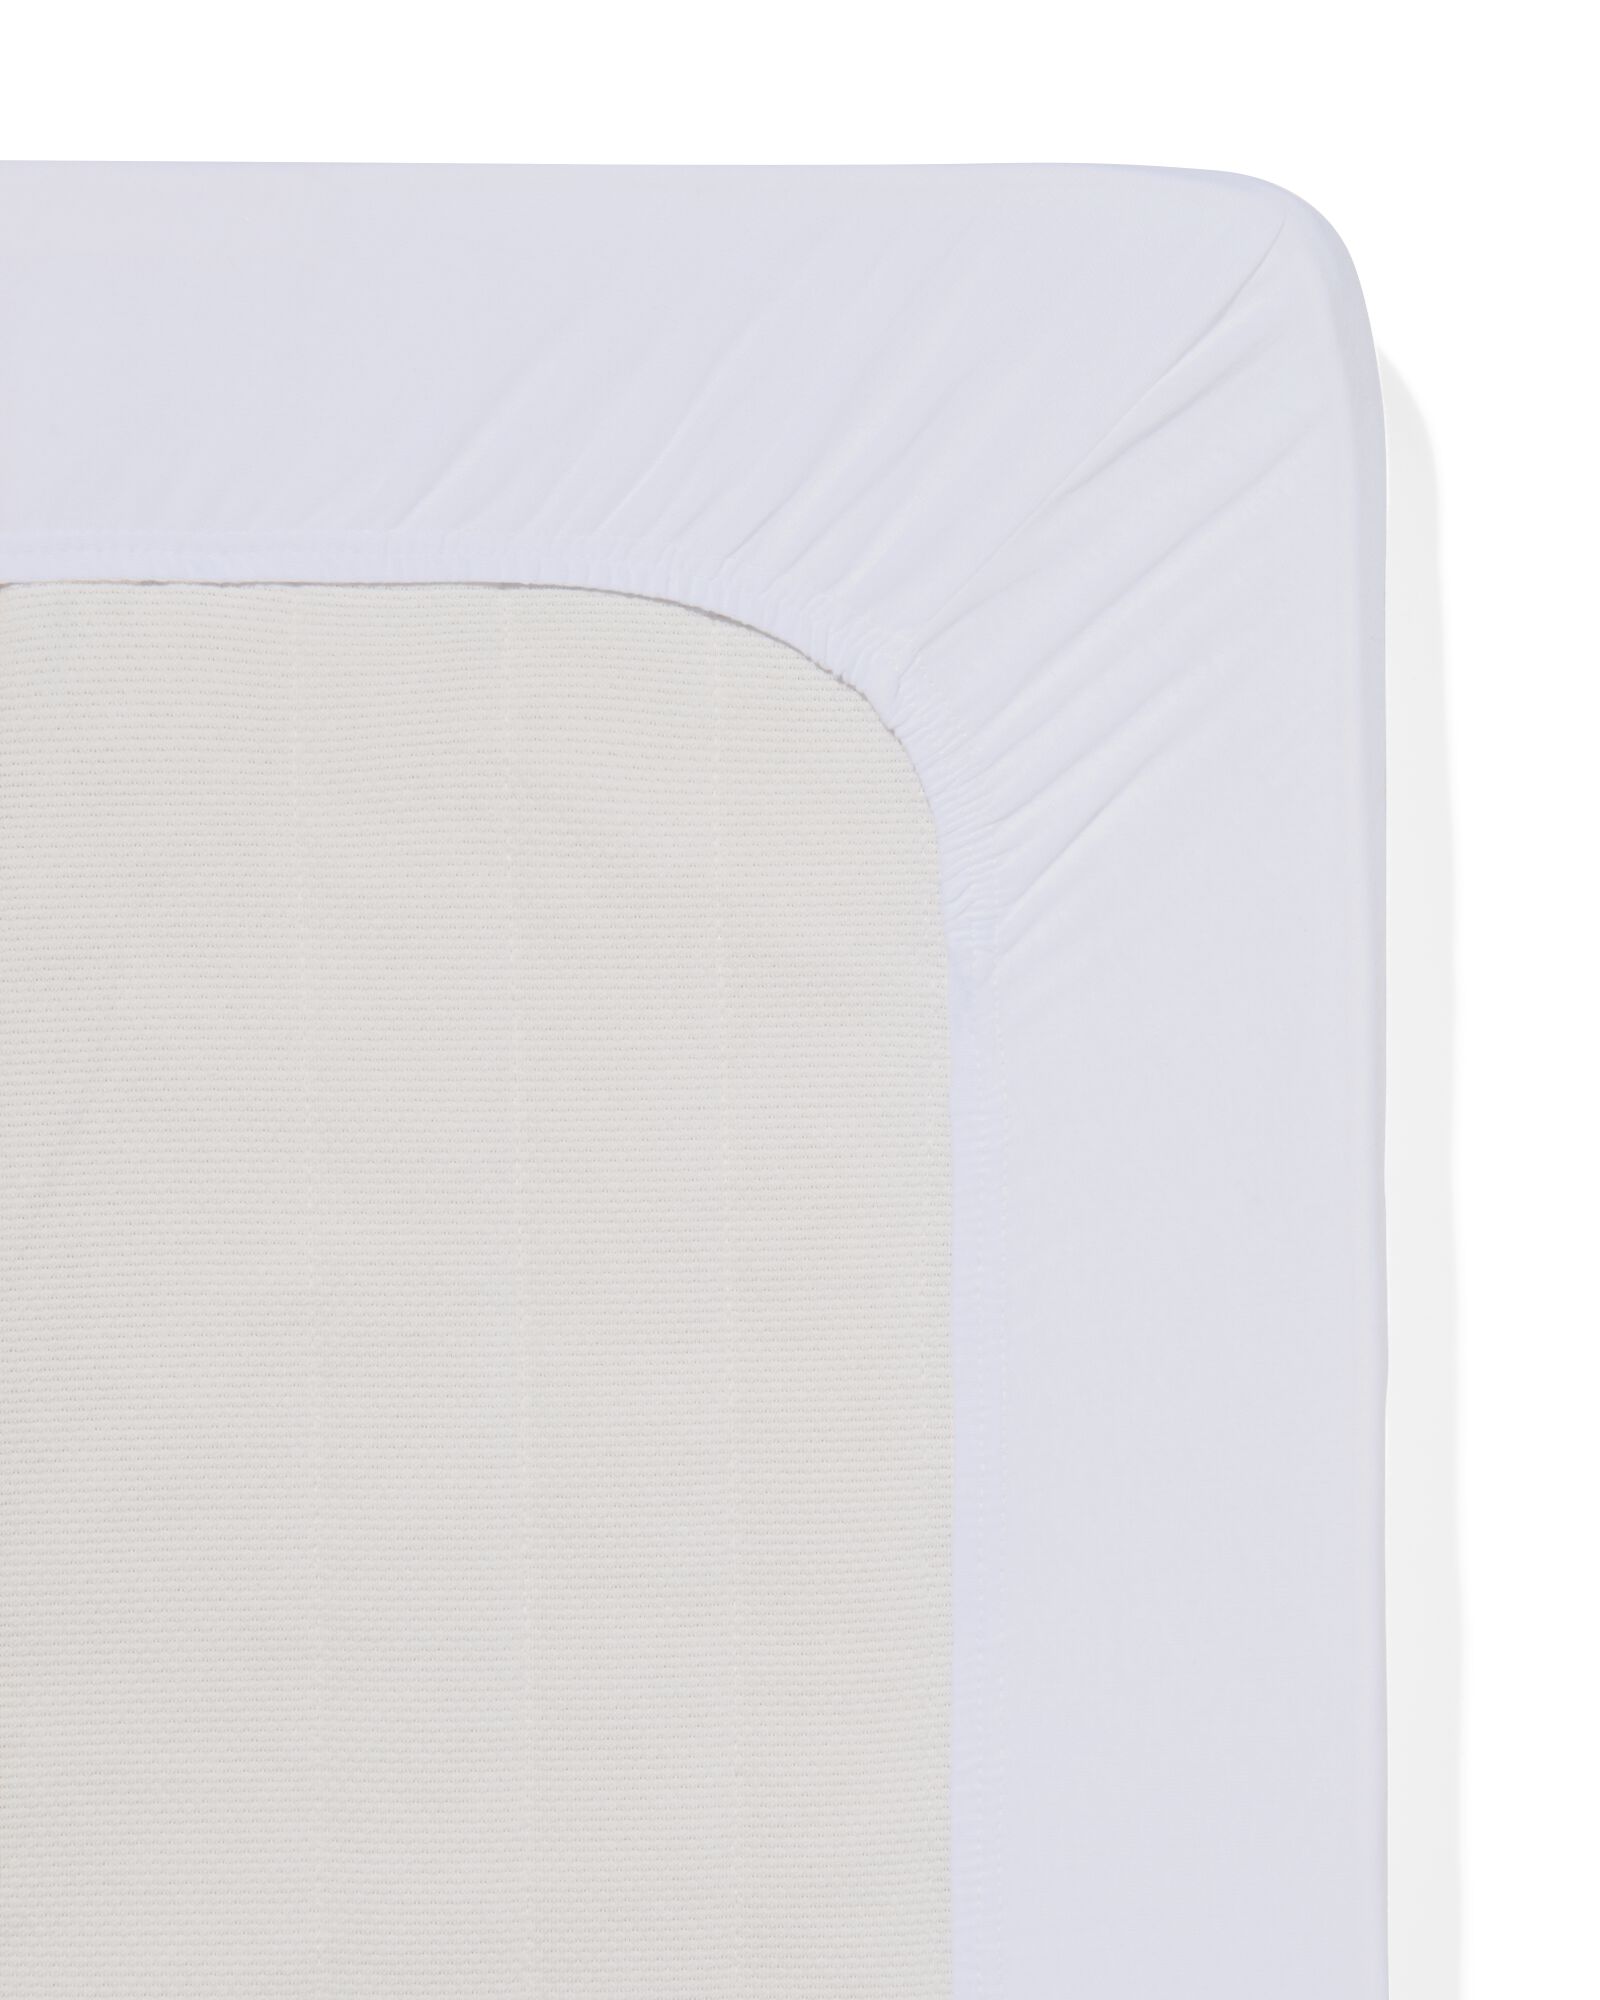 Matratzen-Topper-Spannbettlaken, Jersey, 180 x 220 cm, weiß - 5190115 - HEMA